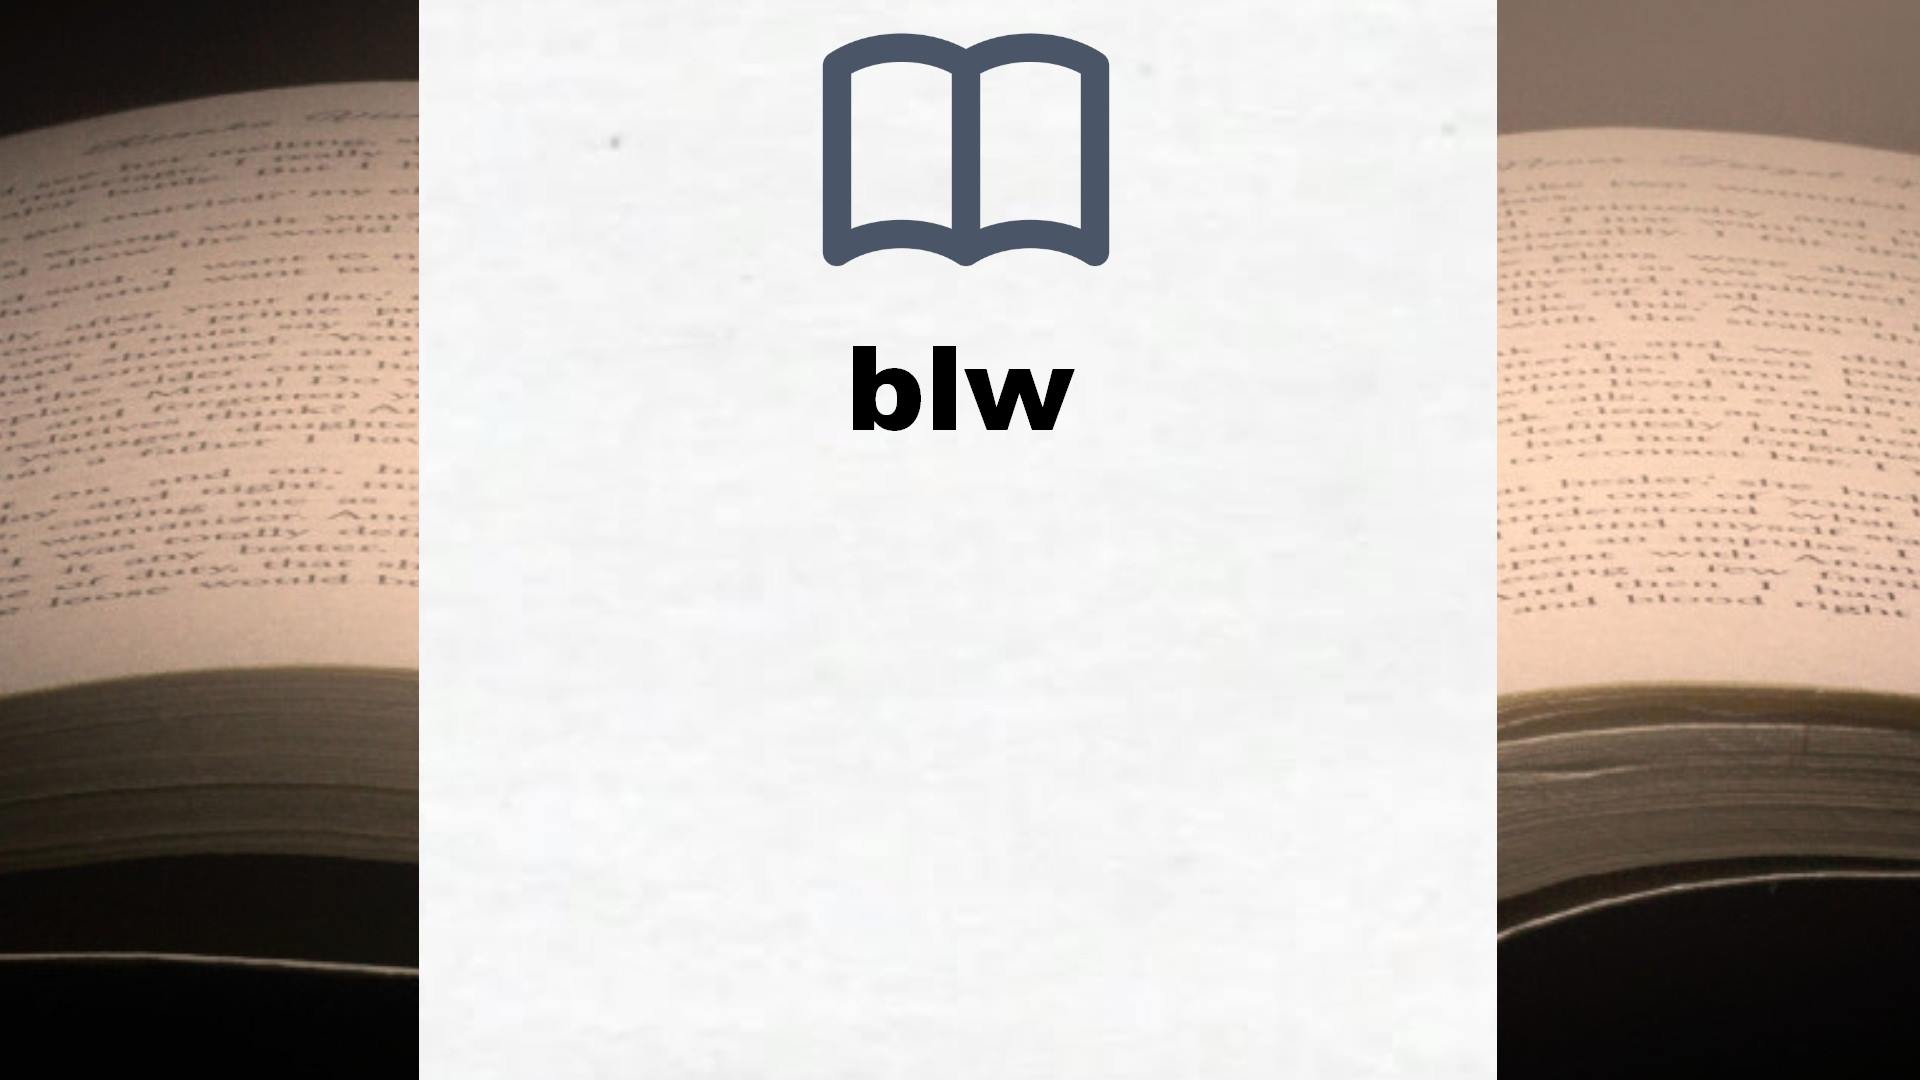 Libros sobre blw